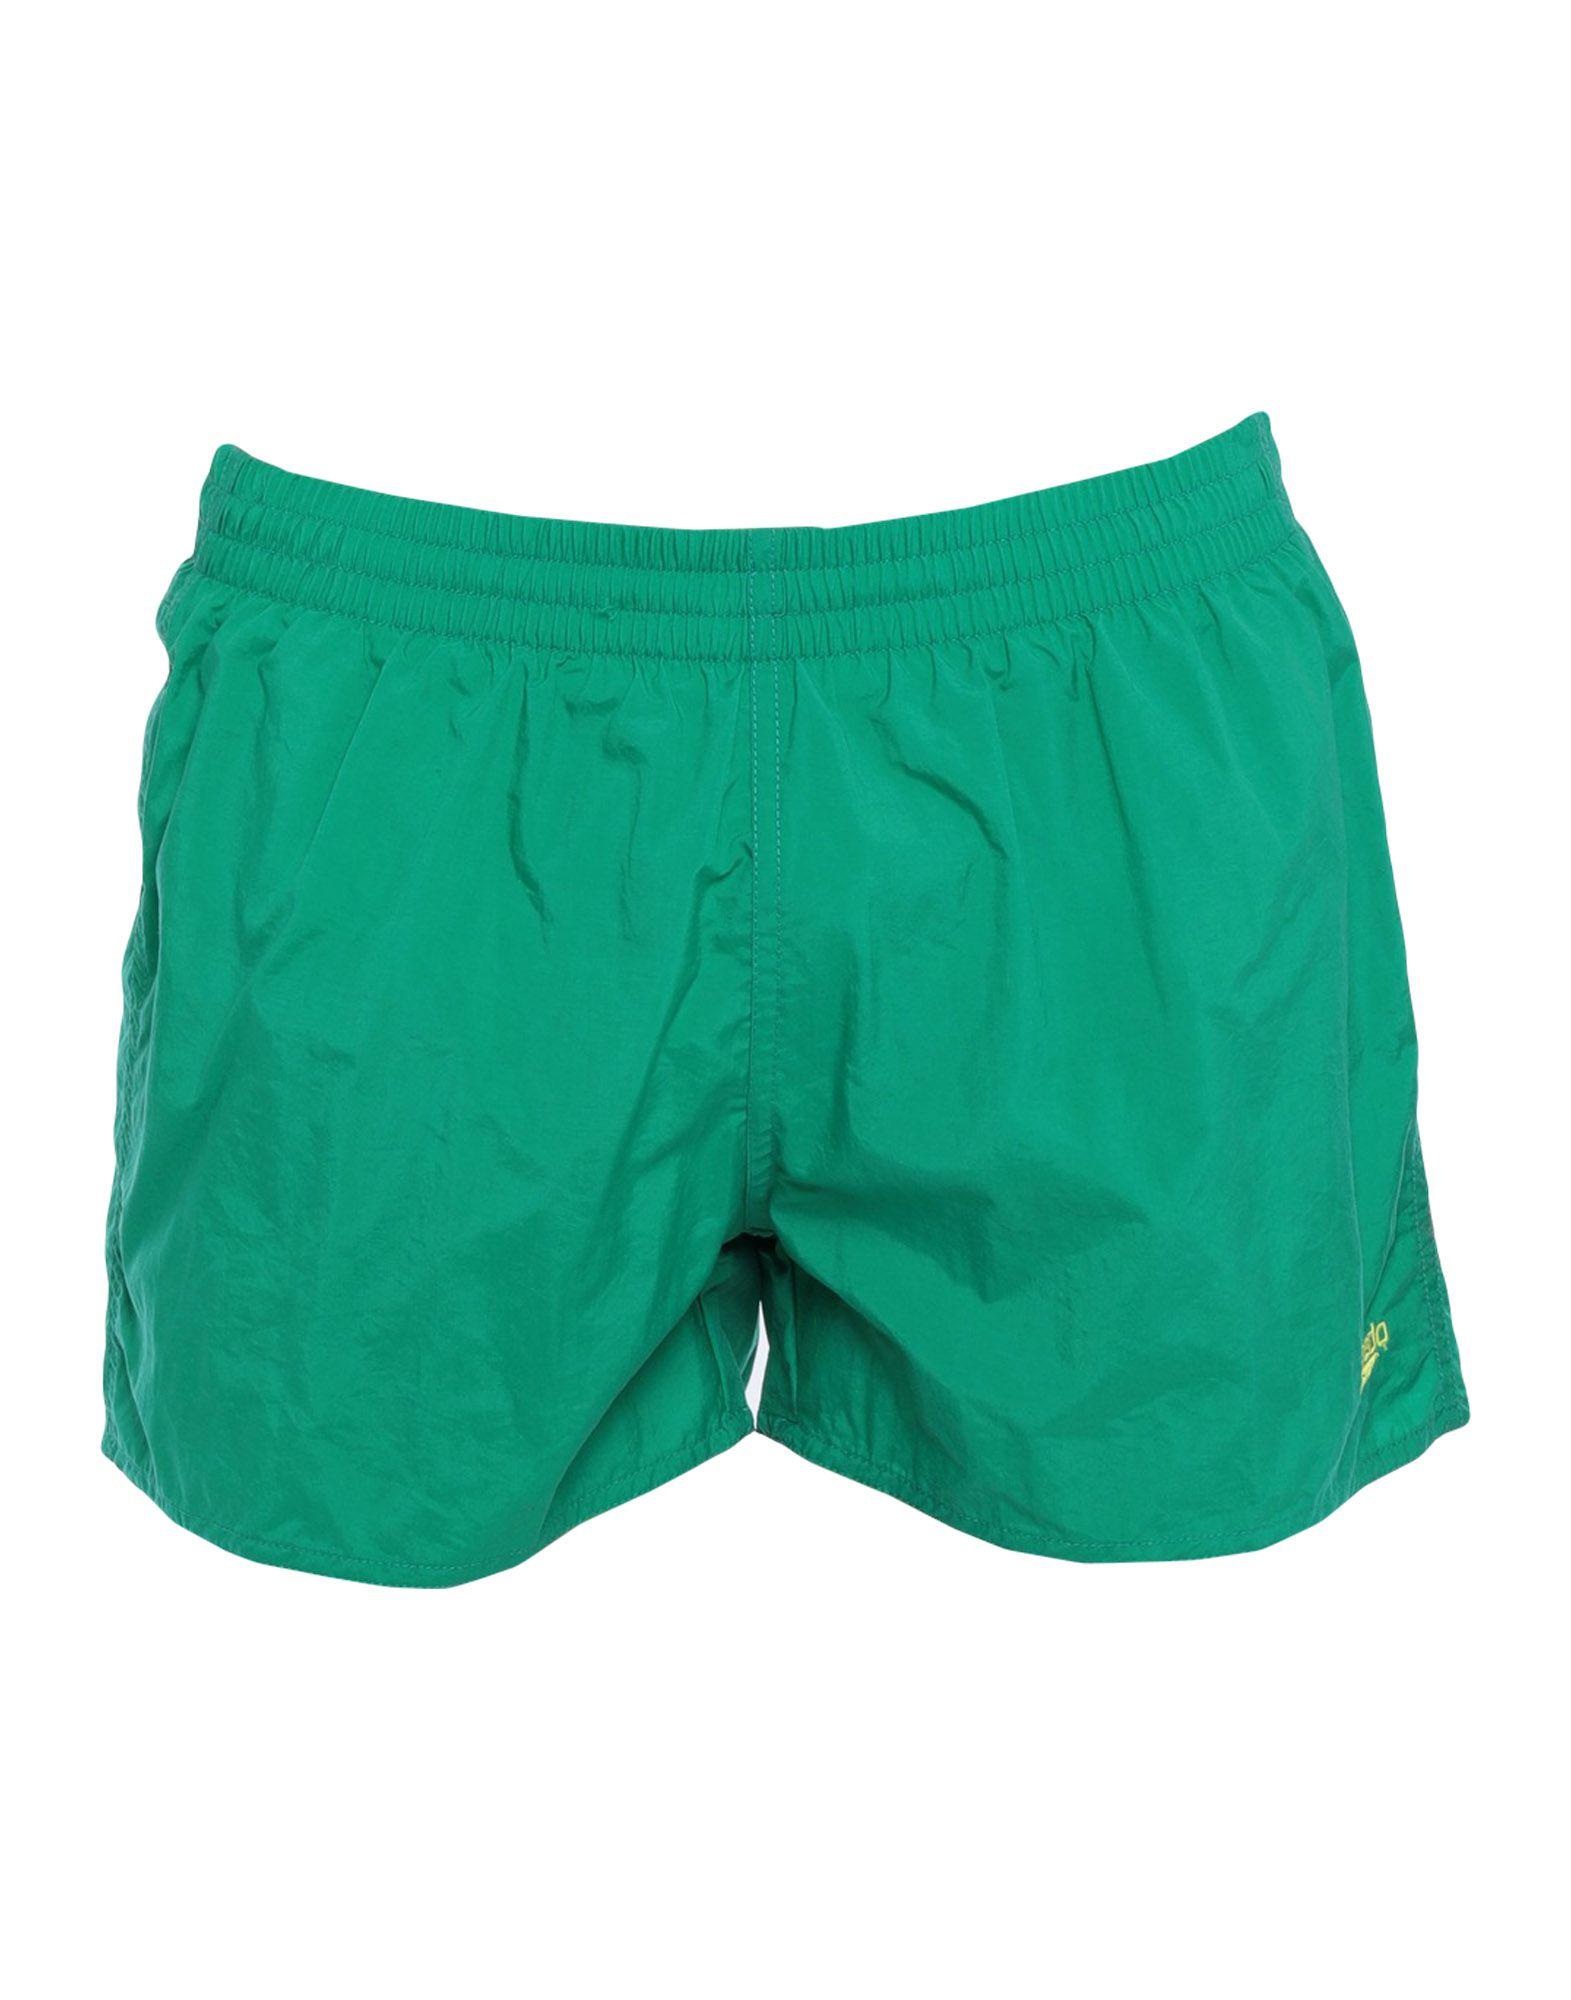 Speedo Synthetic Swim Trunks in Green for Men - Lyst